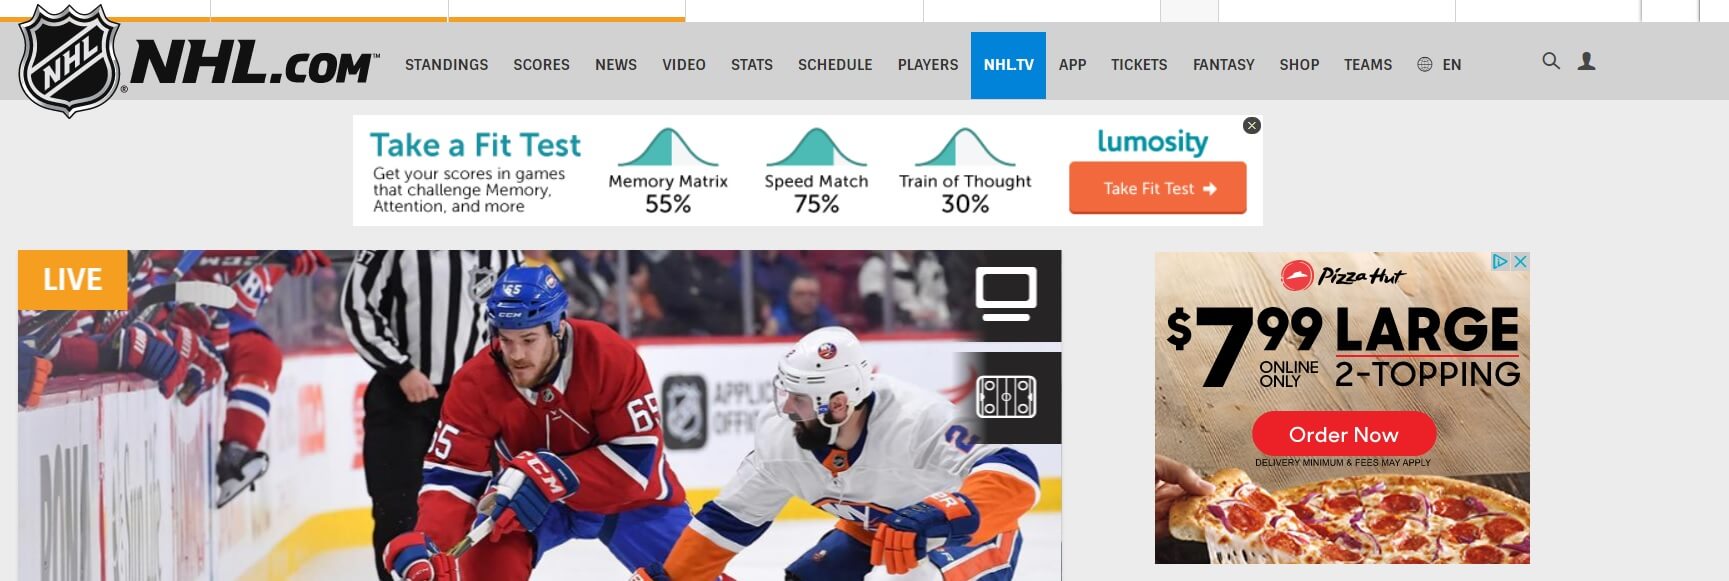 Ejemplos de anuncios destacados en el sitio web de la NHL